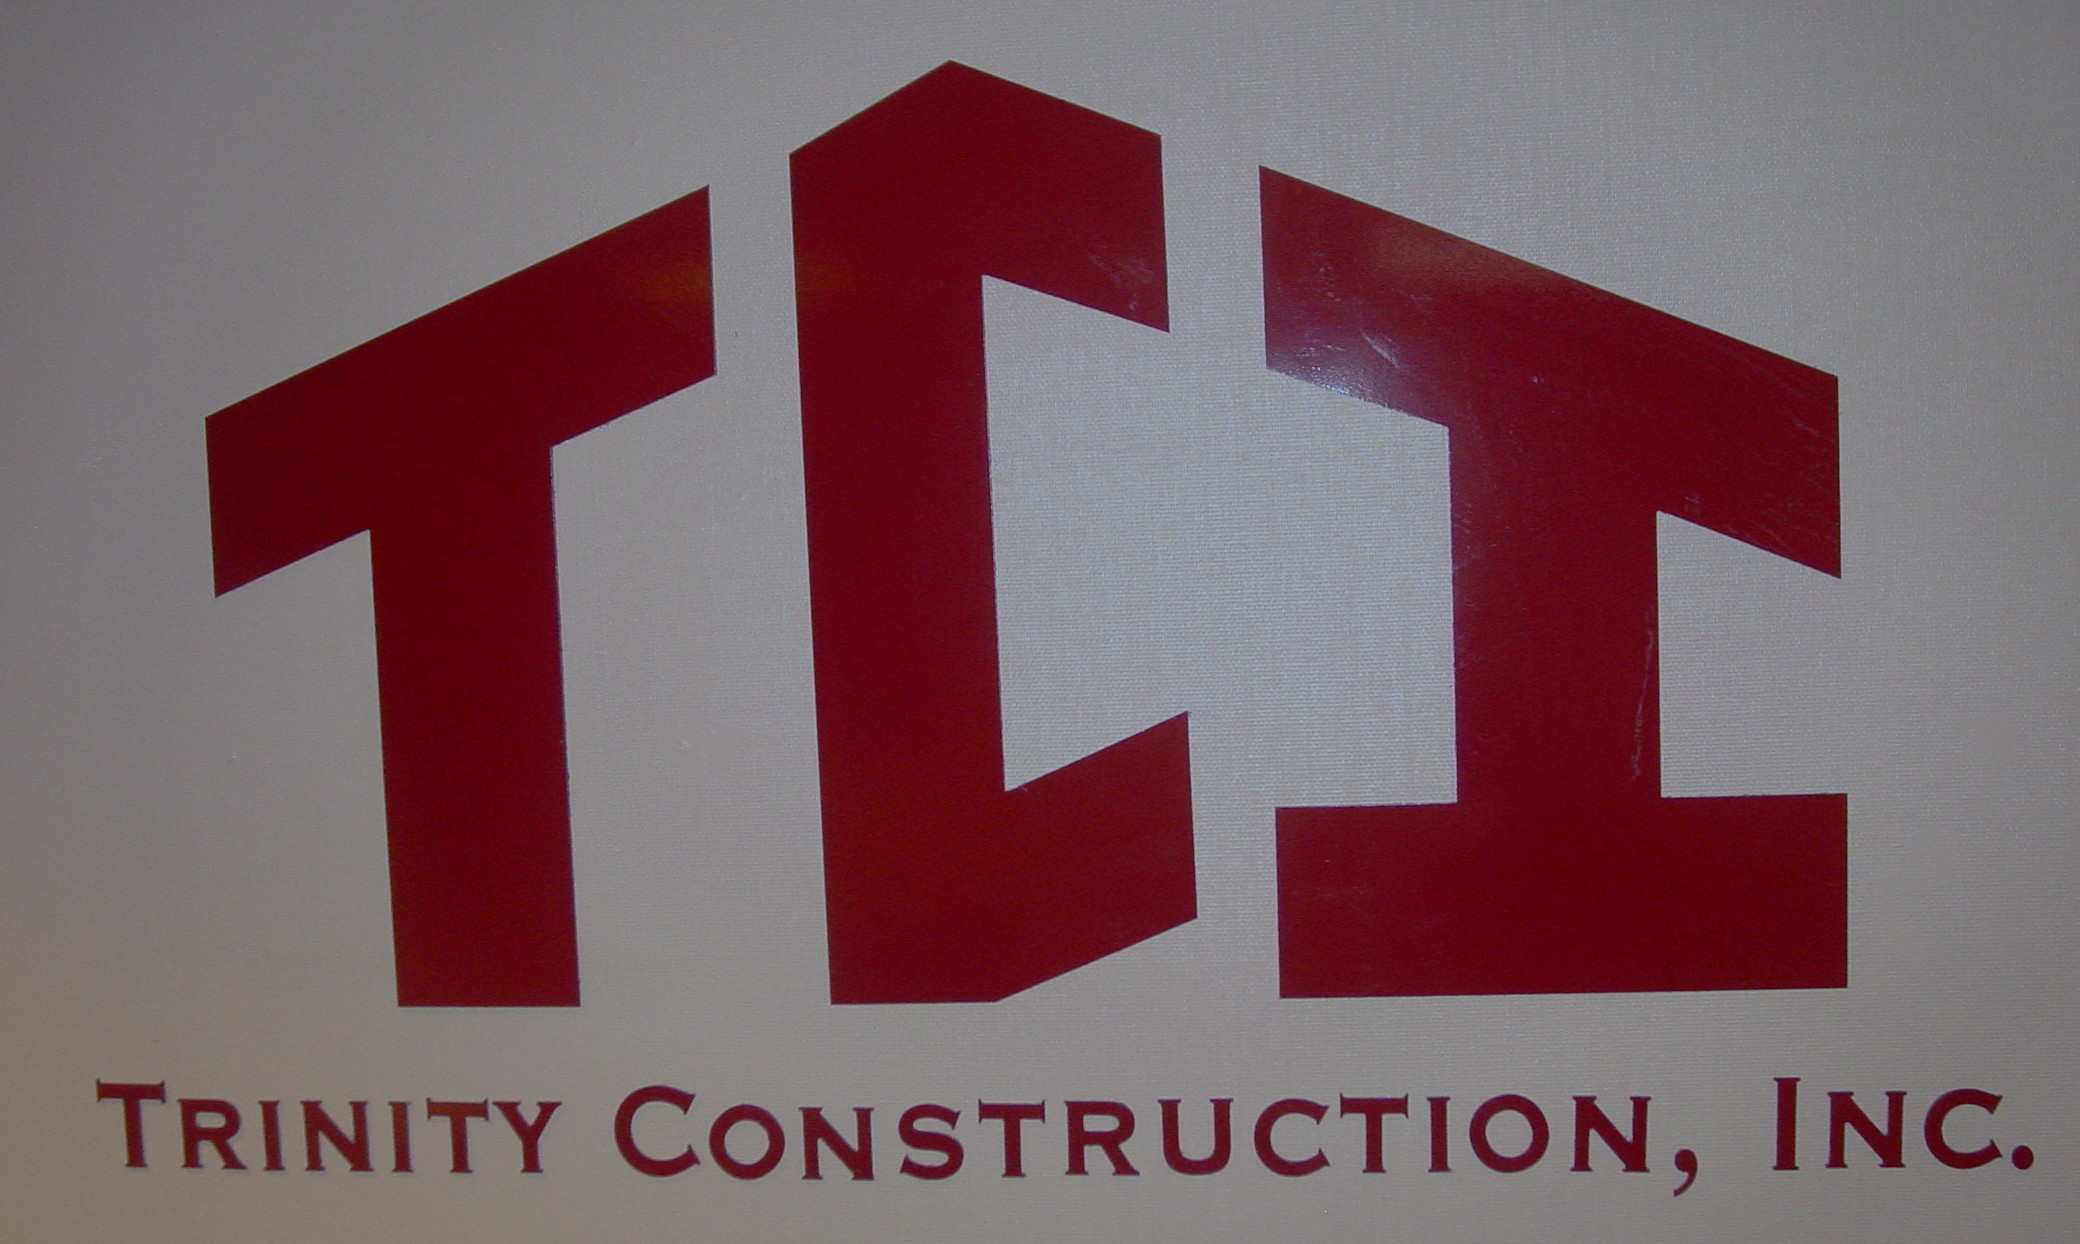 Company logo of Trinity Construction, Inc